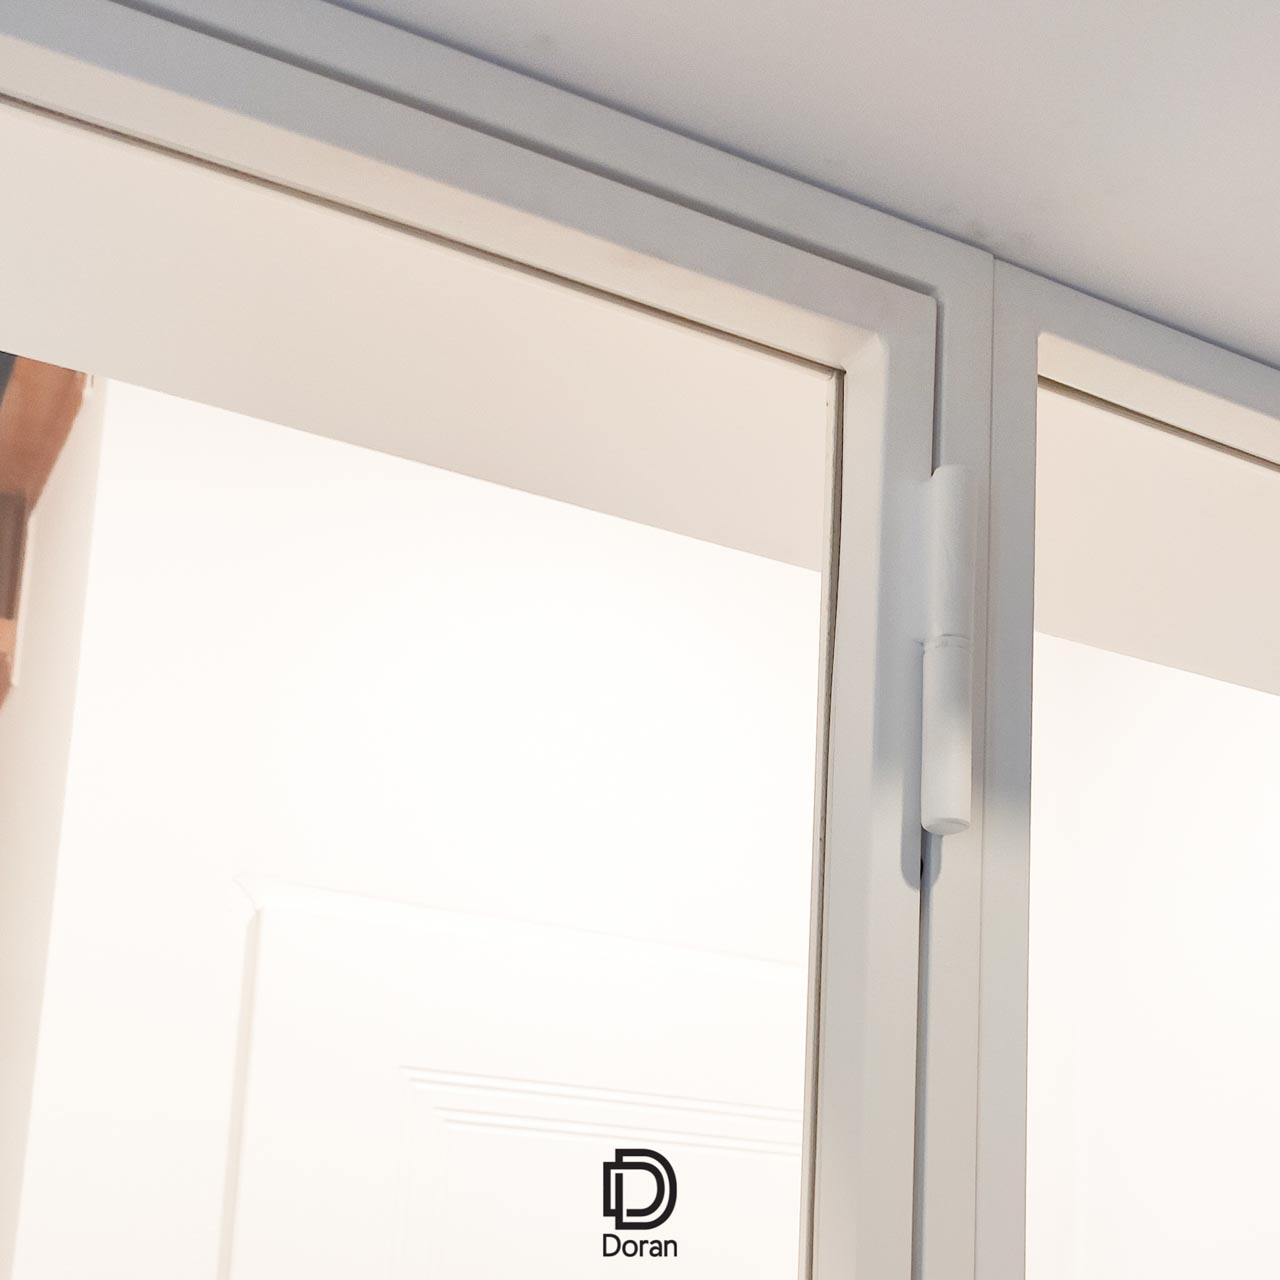 Białe drzwi rozwierne ze ścianką boczną - Kielce (zredukowane 720p) (4)